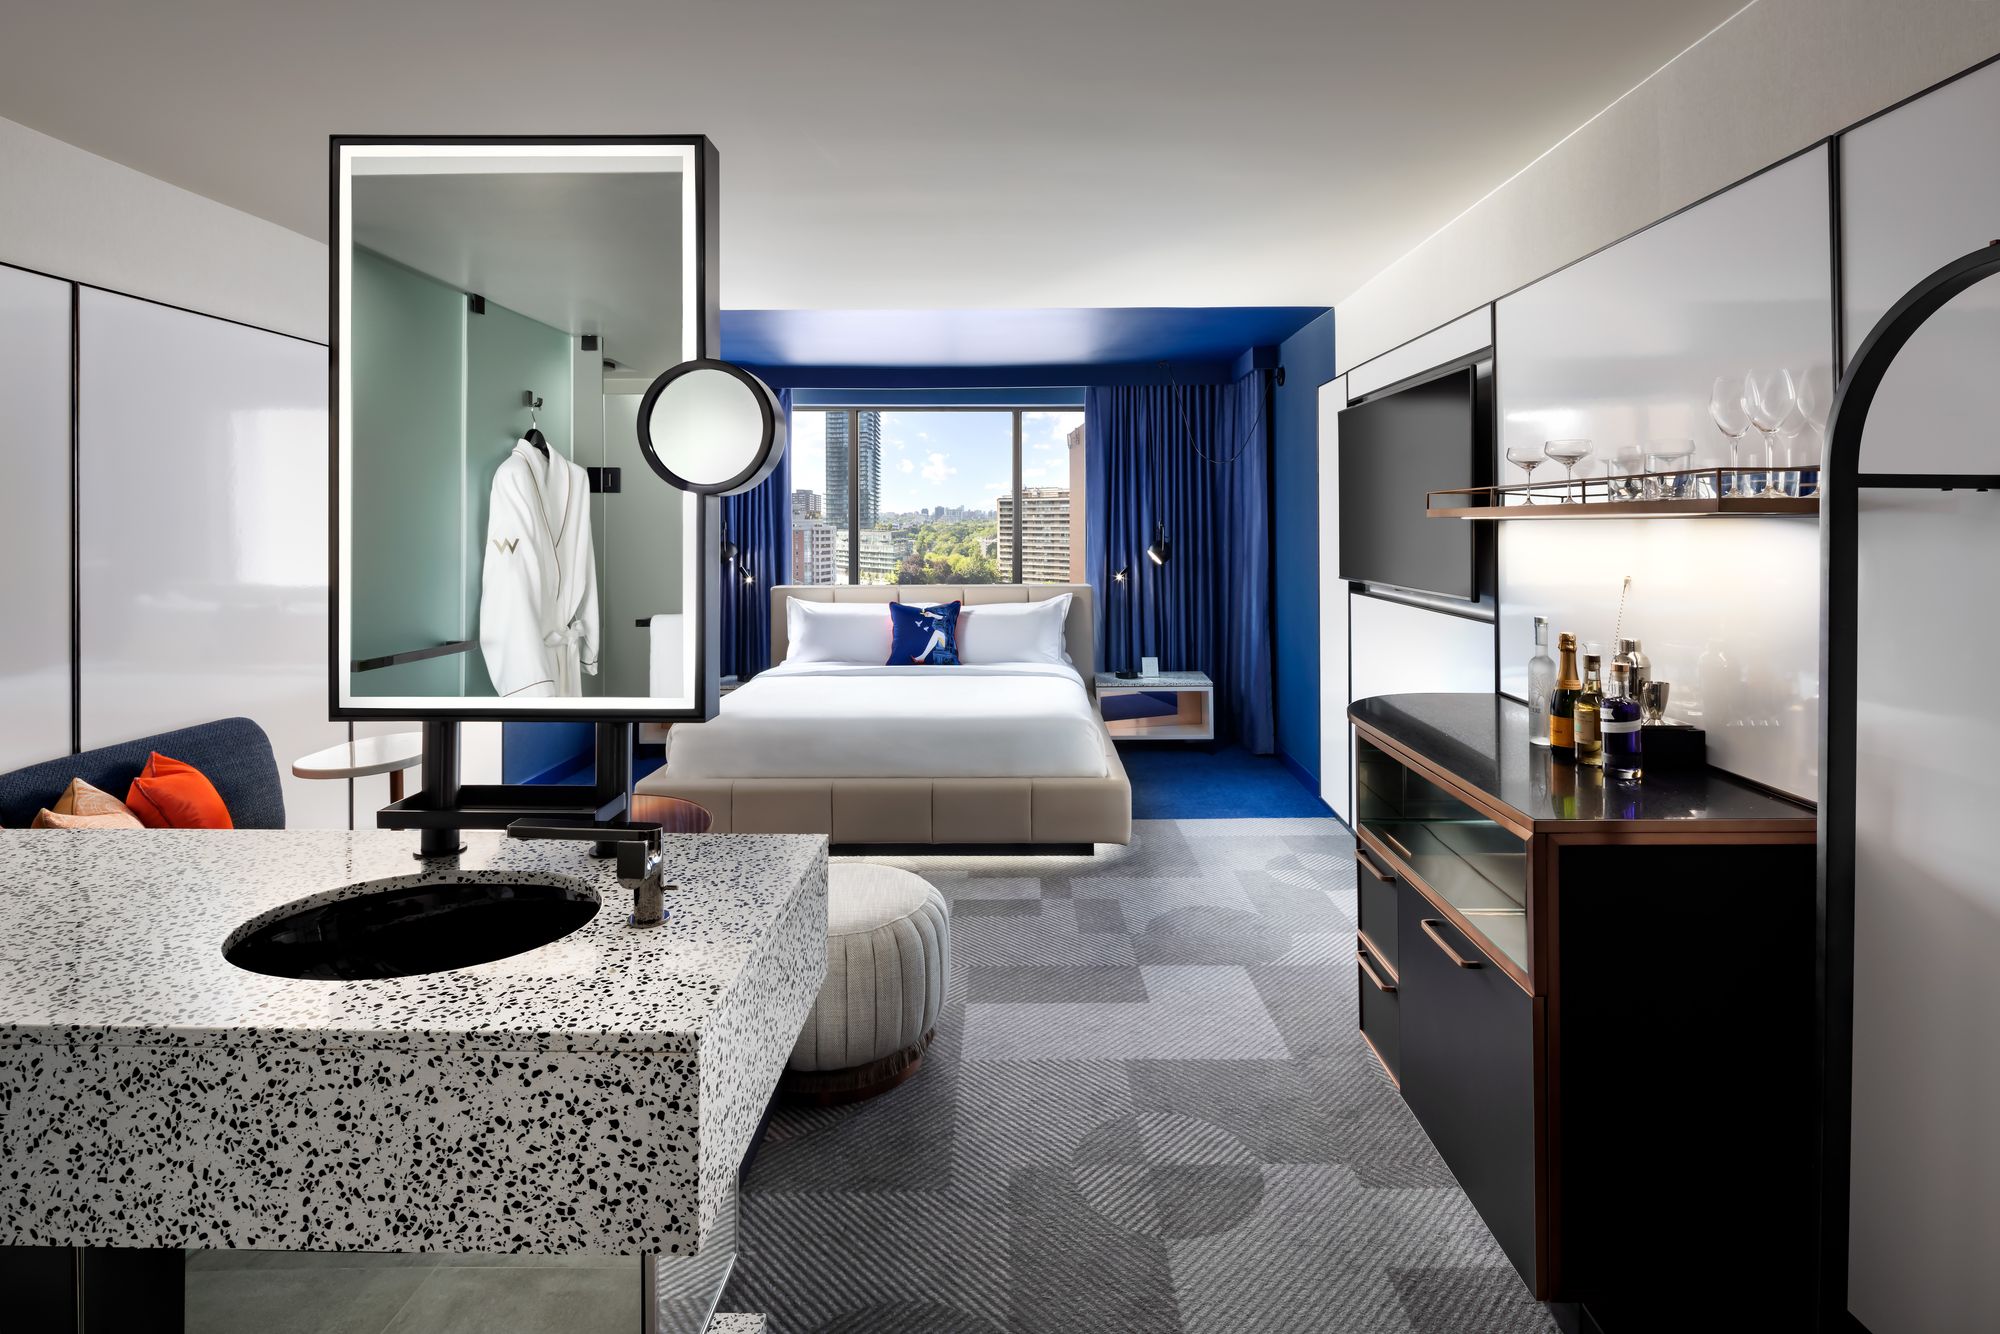 图片[17]|W酒店多伦多|ART-Arrakis | 建筑室内设计的创新与灵感